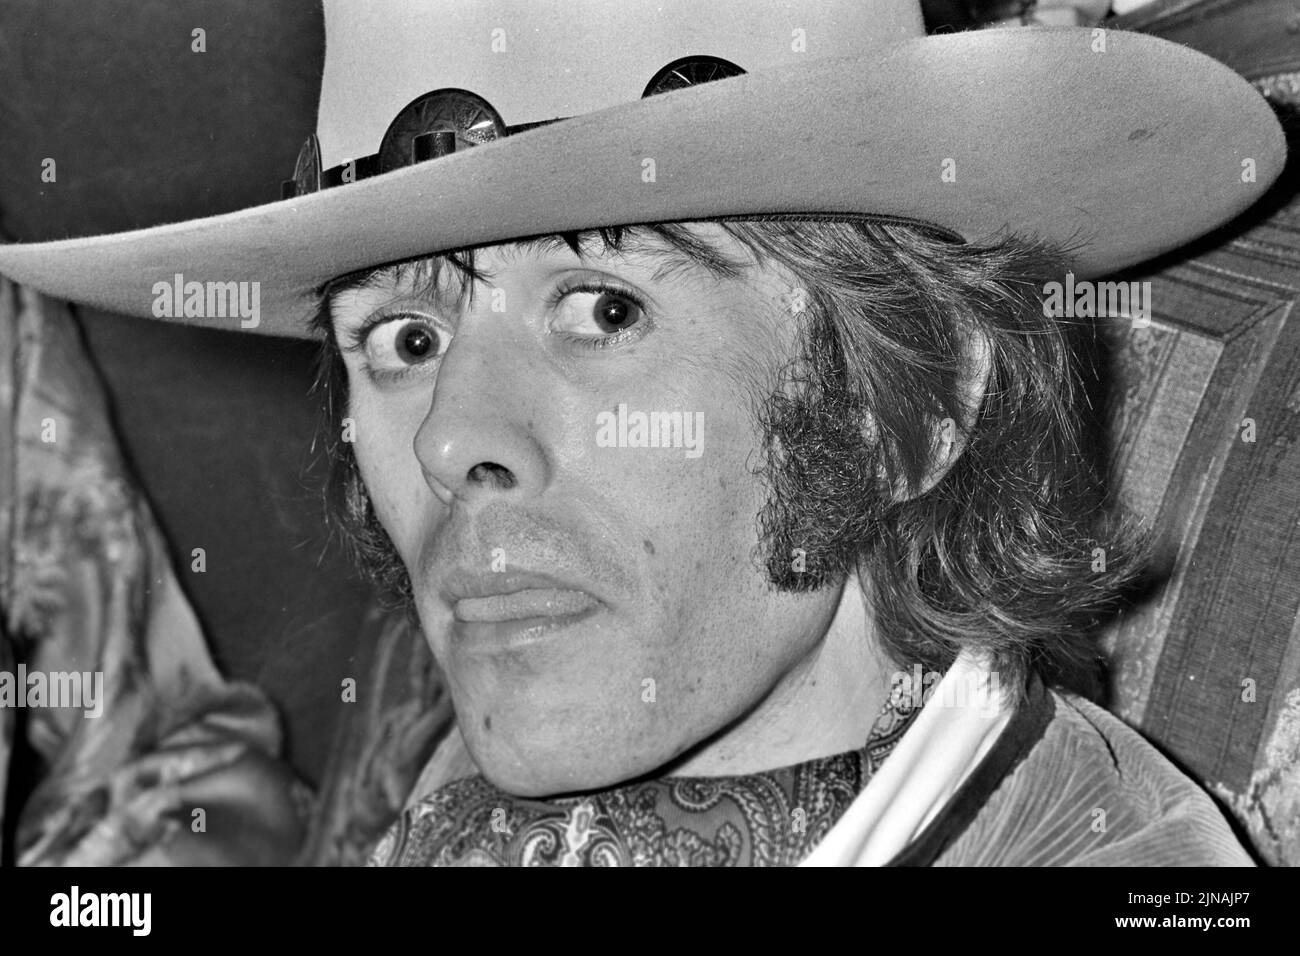 JEFFERSON AIRPLANE grupo de rock estadounidense con Spencer Davis en 1970 Foto de stock